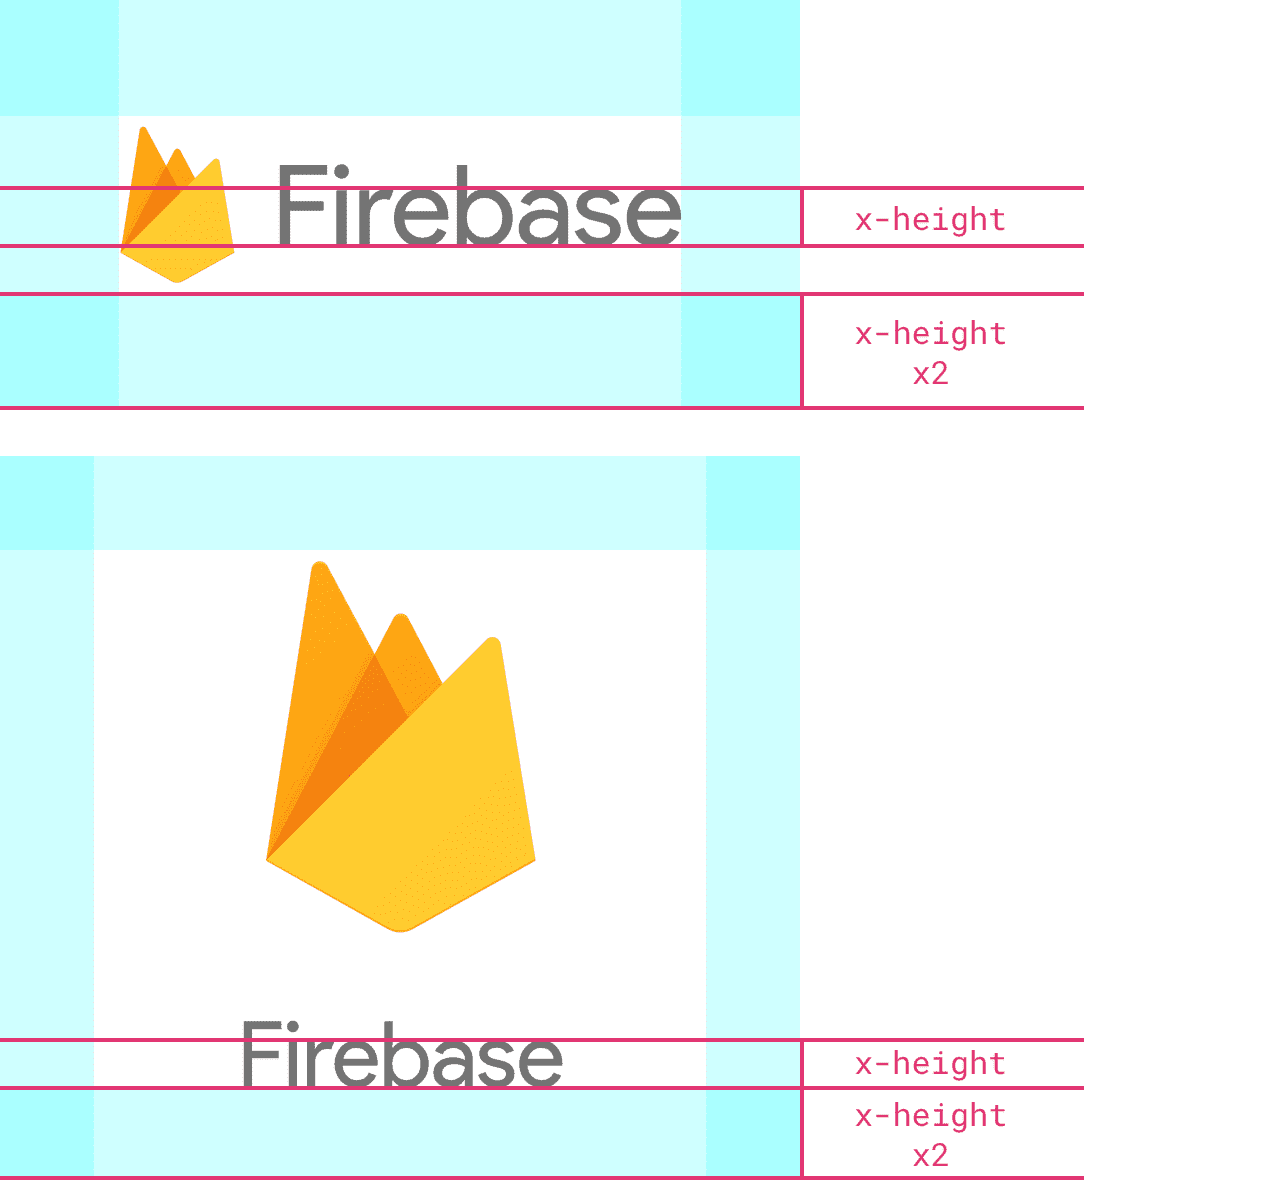 높이가 로고의 2배 이상인 Firebase 로고의 예